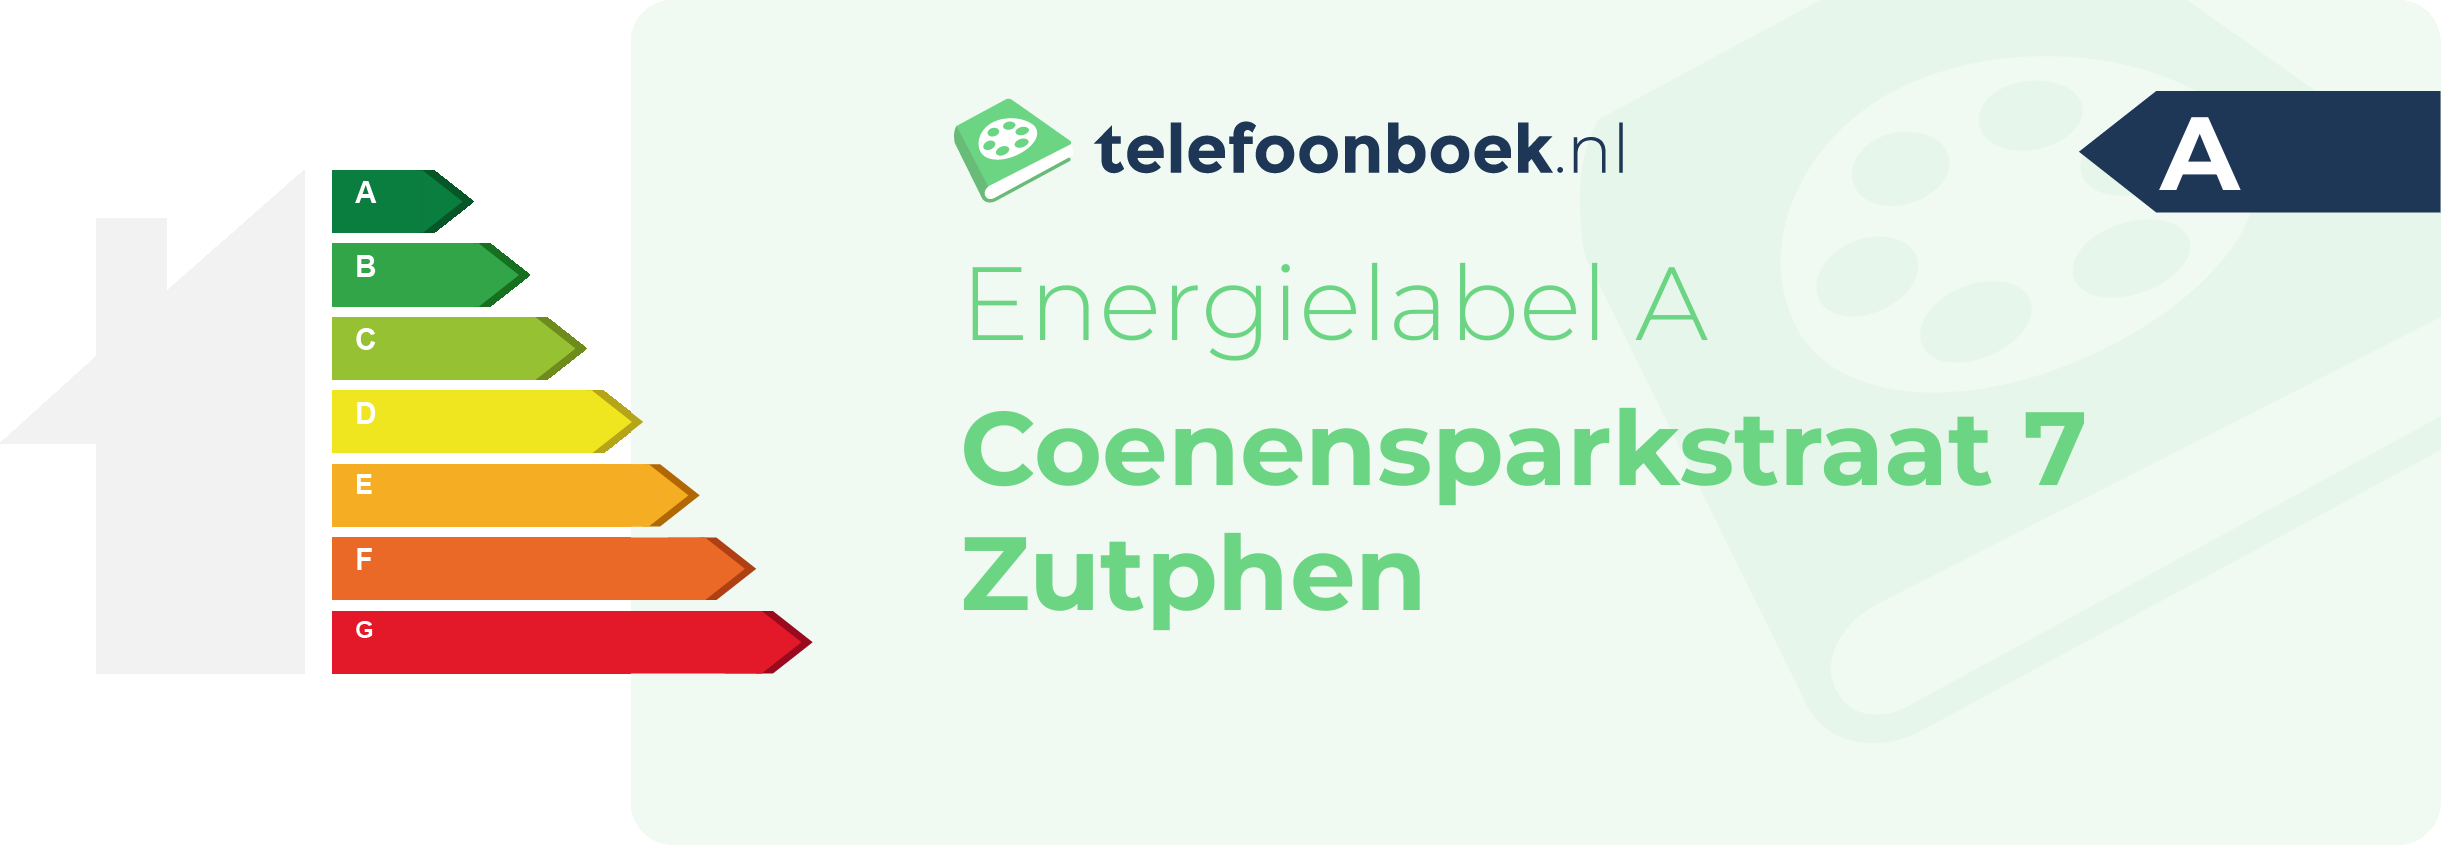 Energielabel Coenensparkstraat 7 Zutphen